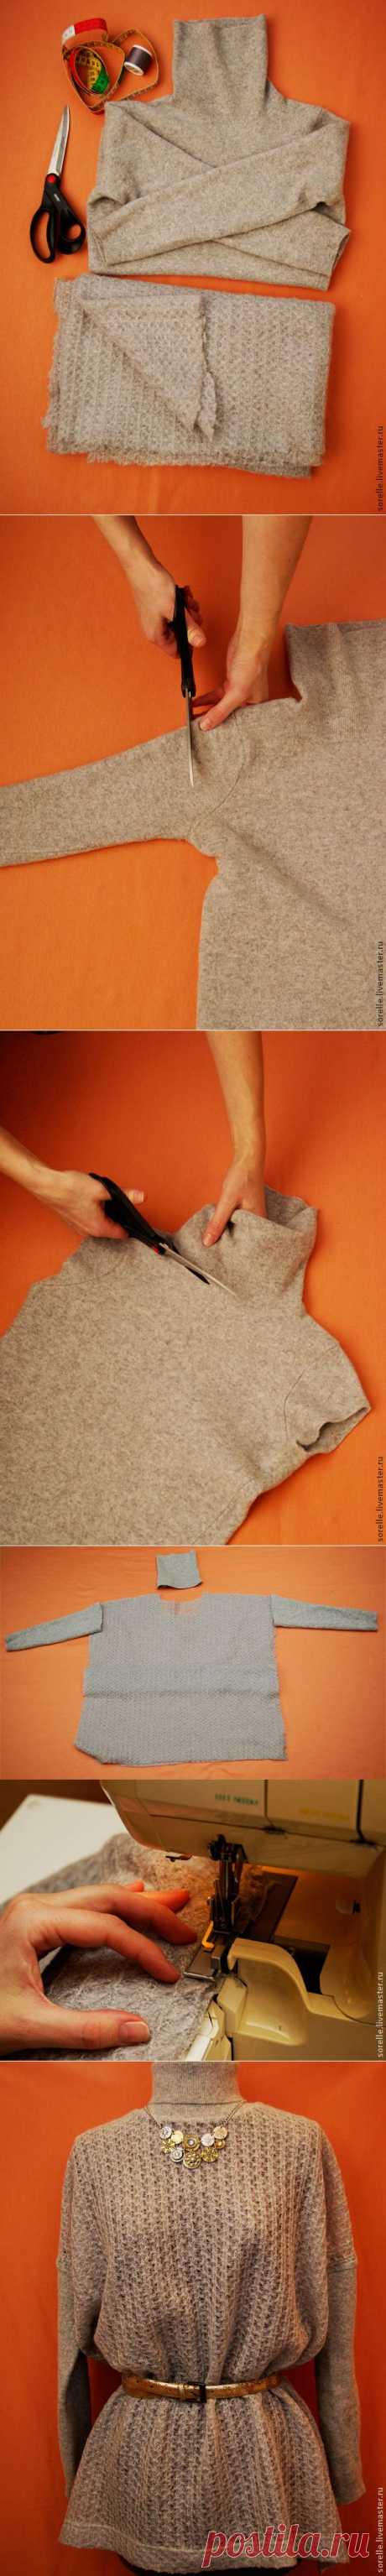 Переделка свитера в стильную вещицу - Ярмарка Мастеров - ручная работа, handmade